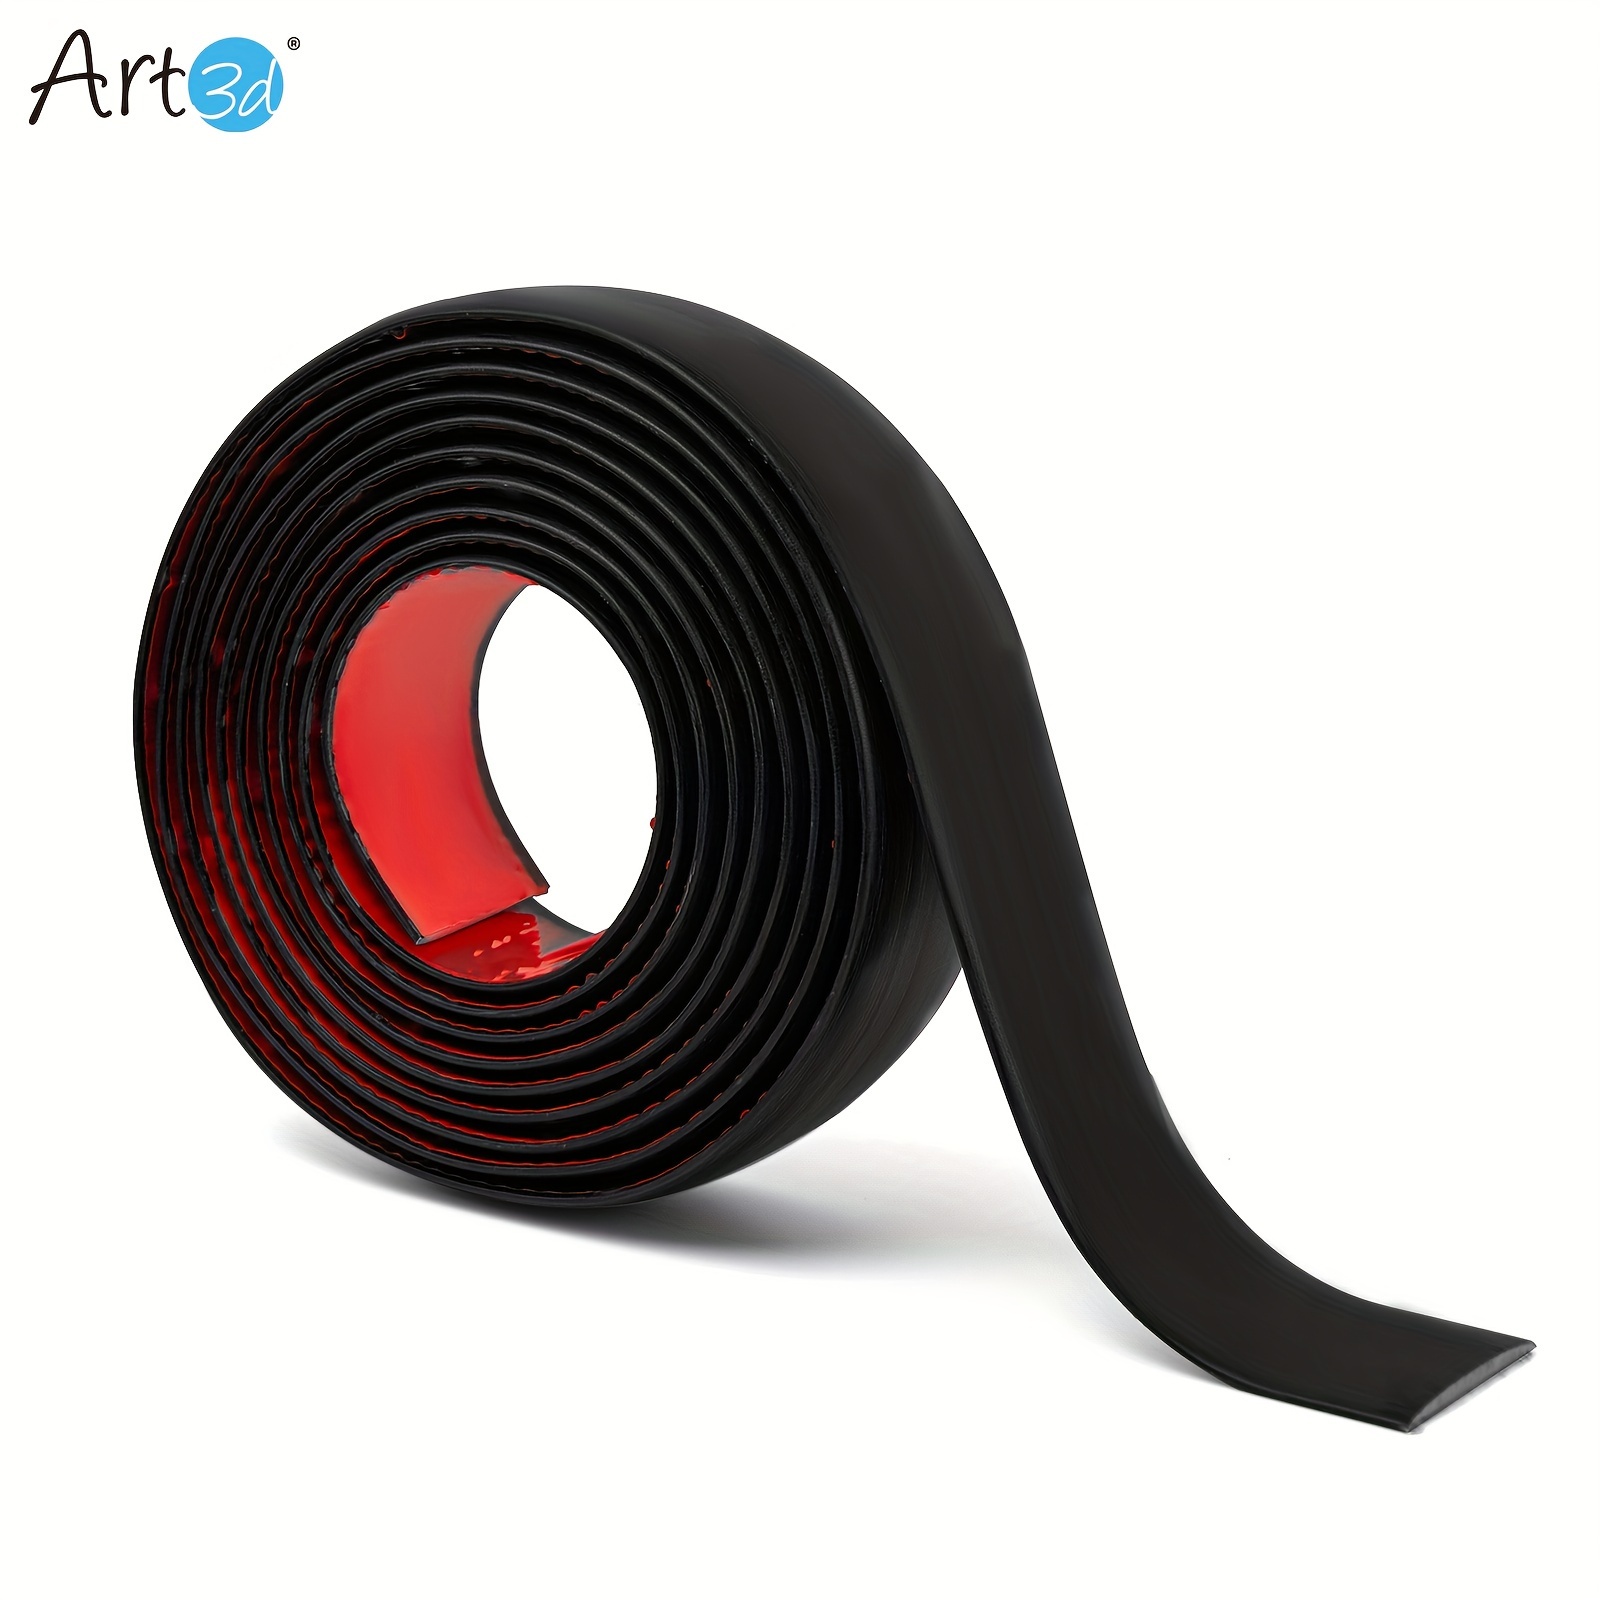 

Art3d Self-adhesive Vinyl Floor Transition Strips, Floor Flat Divider Strip For Joining Floor Gaps, Carpet Threshold Transition Strips (10 Ft., 1.57 In., Black)